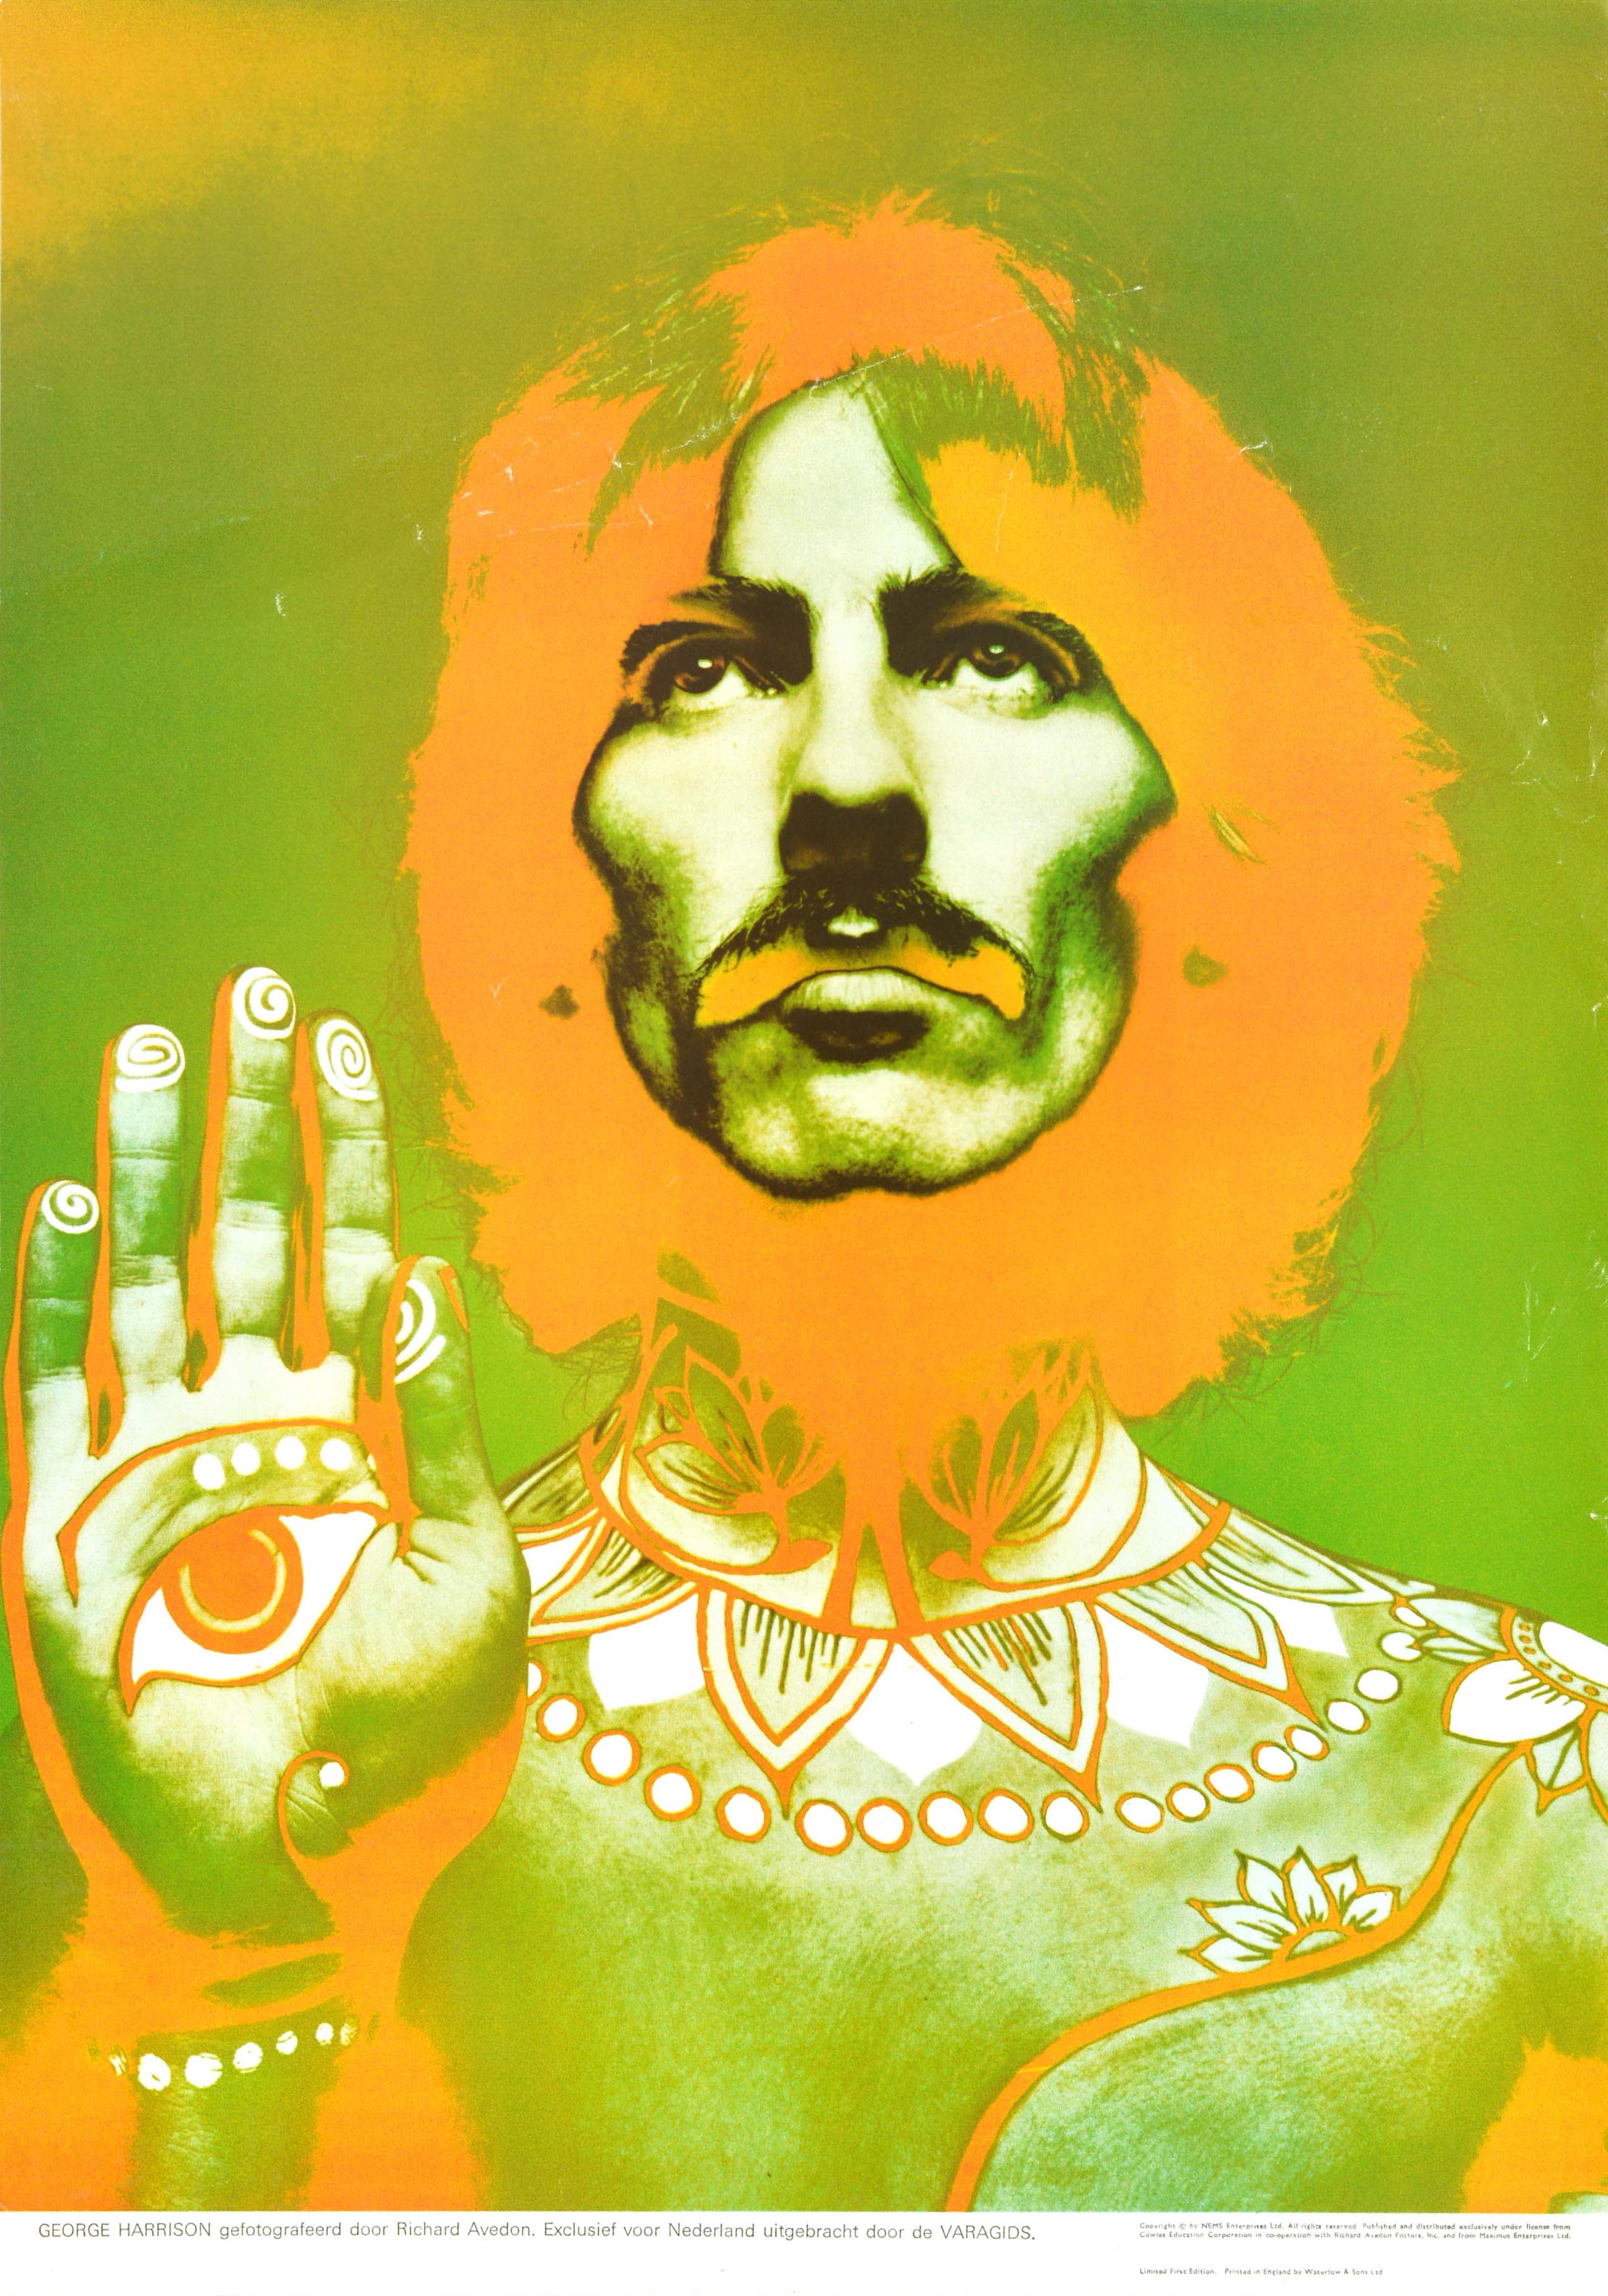 Print Richard Avedon - Affiche publicitaire vintage originale des Beatles avec l'œil de George Harrison Avedon